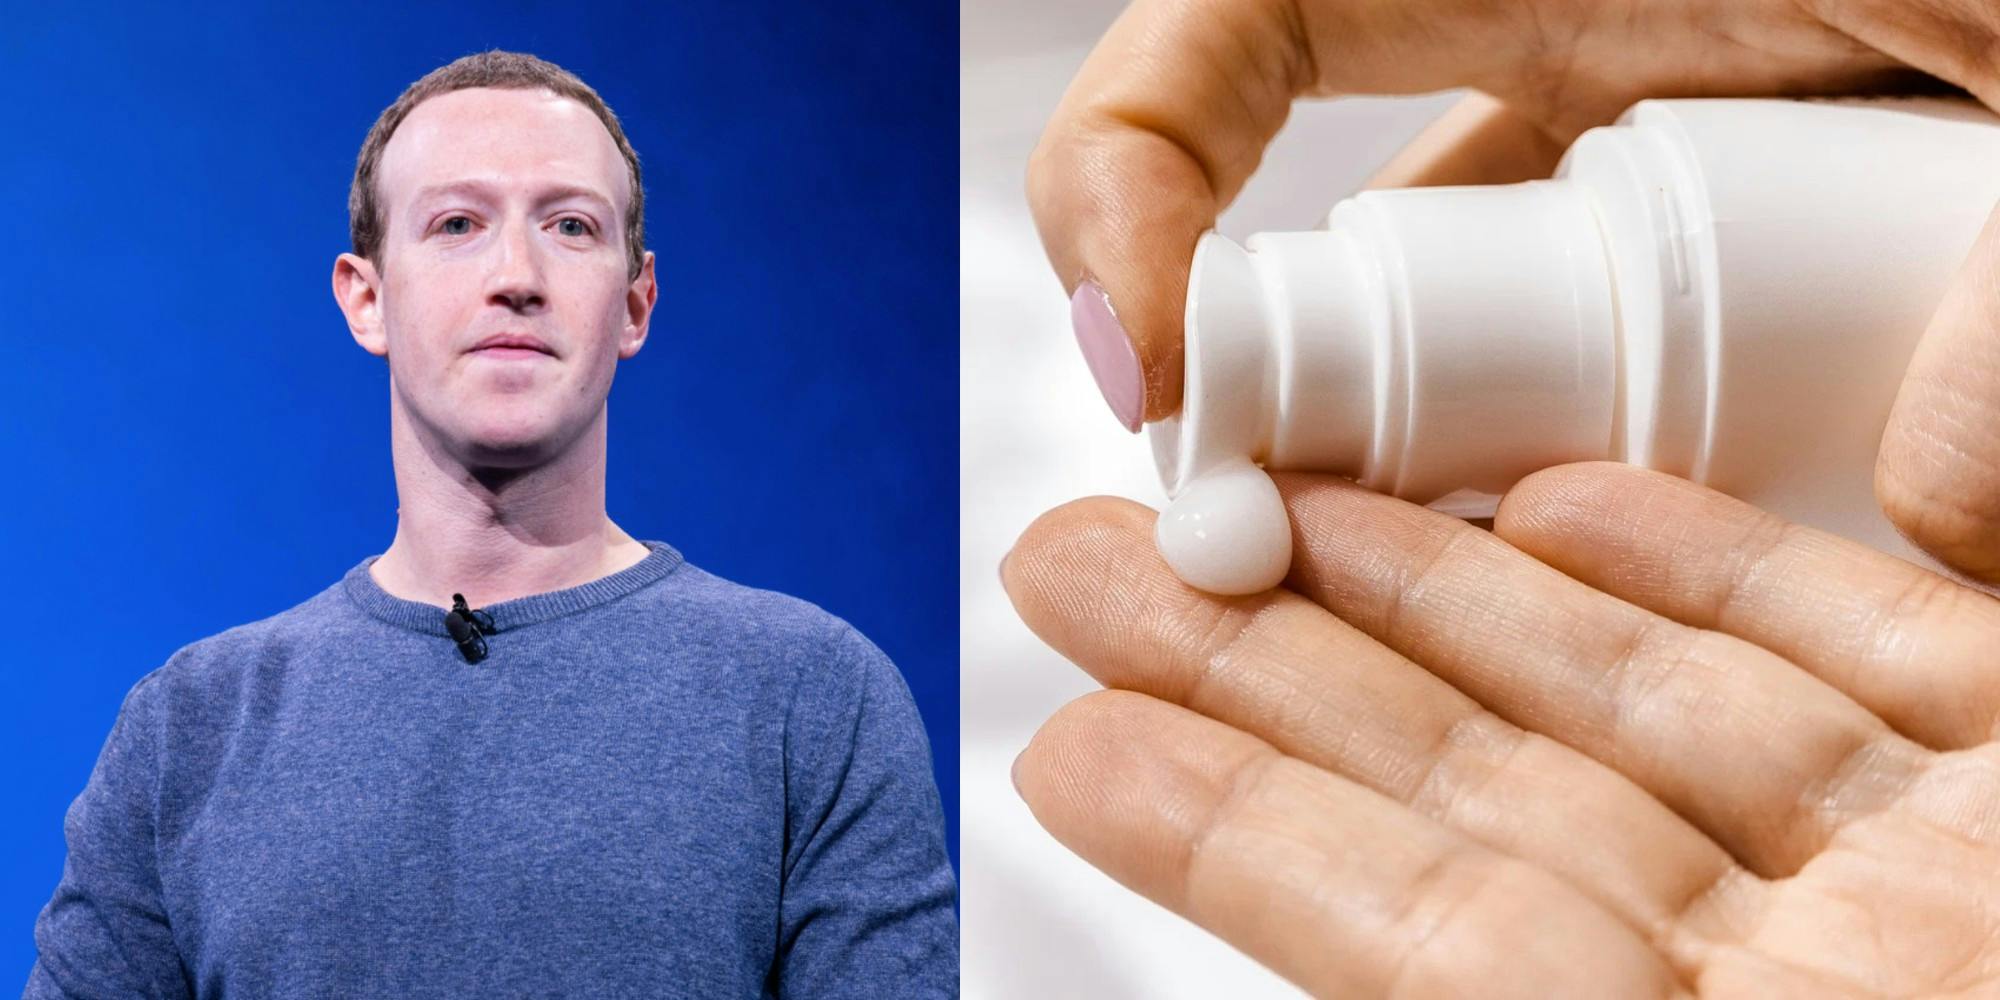 Mark Zuckerberg and lotion